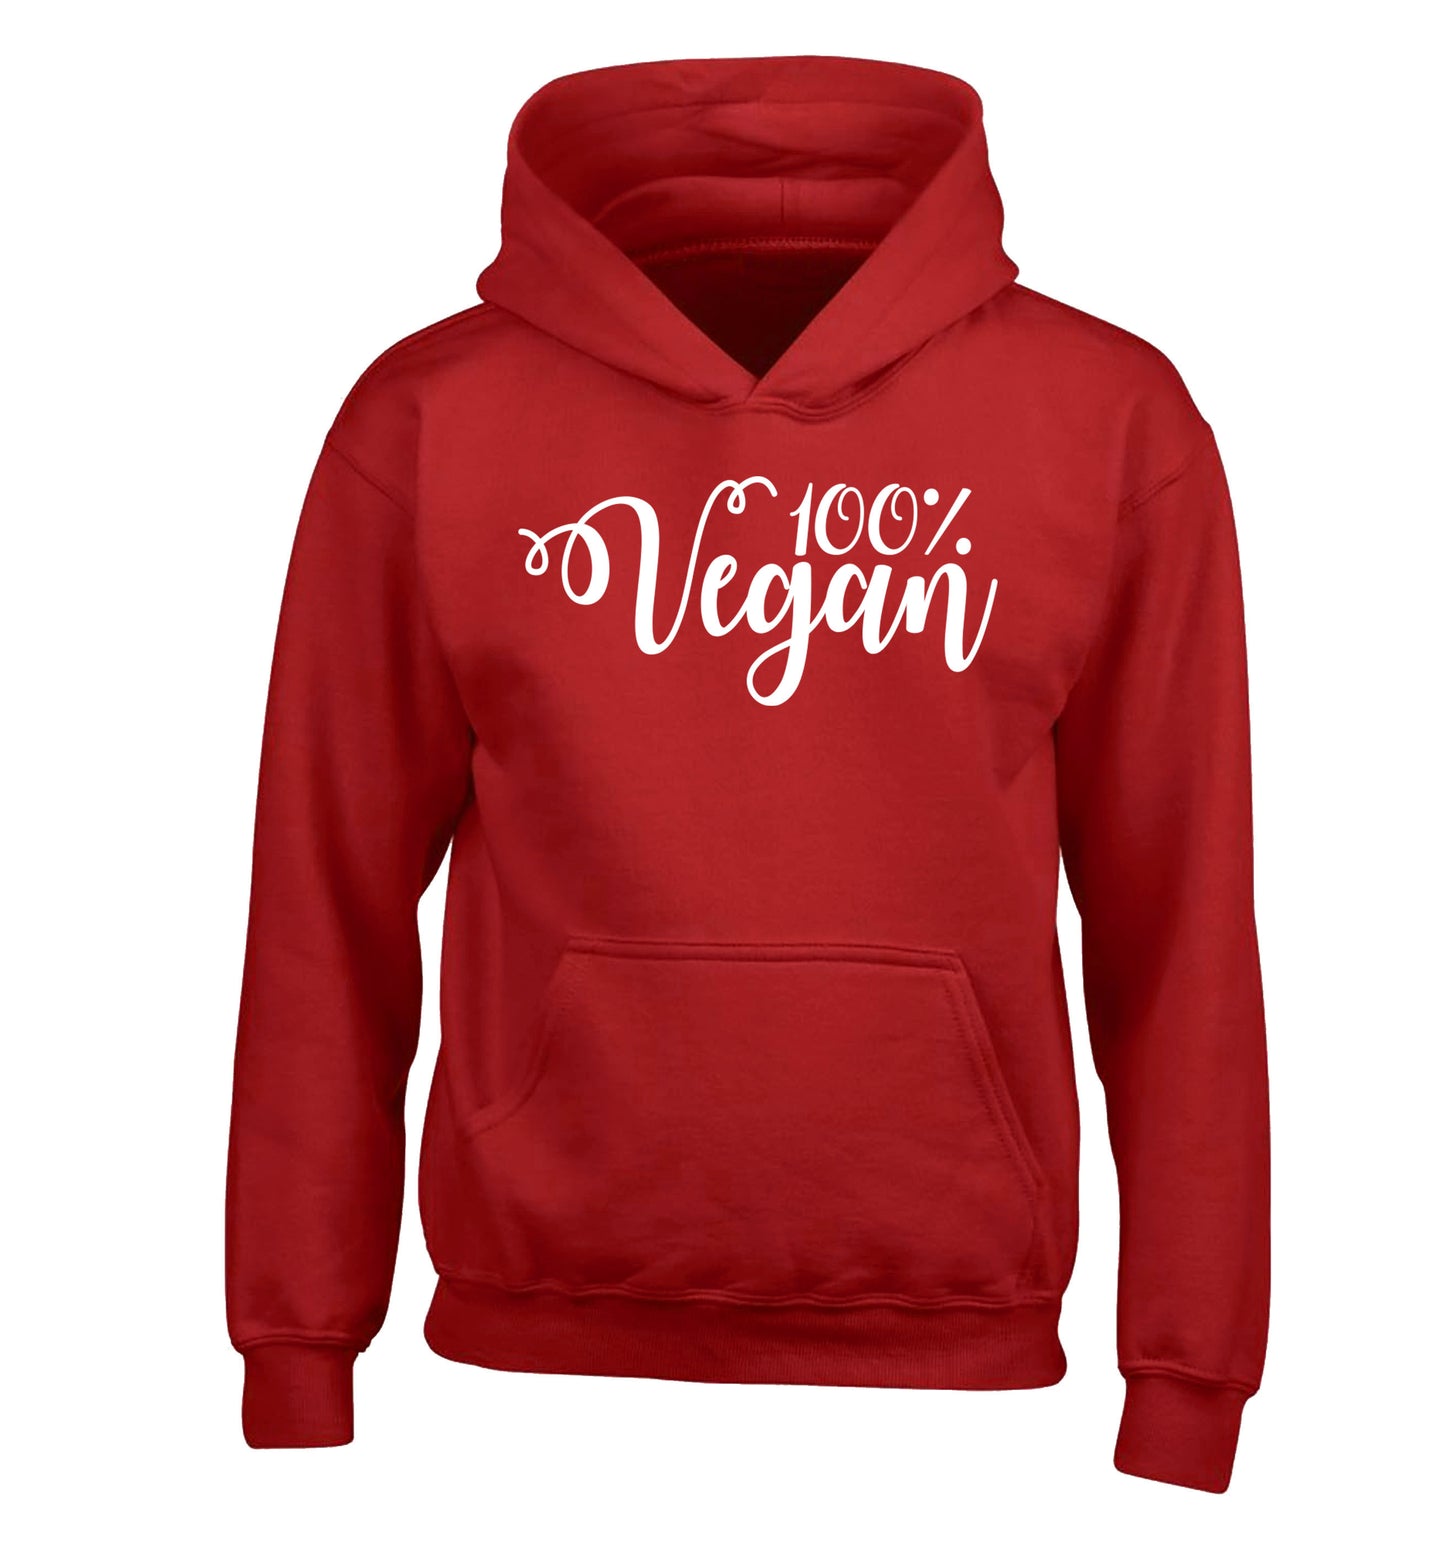 100% Vegan children's red hoodie 12-14 Years